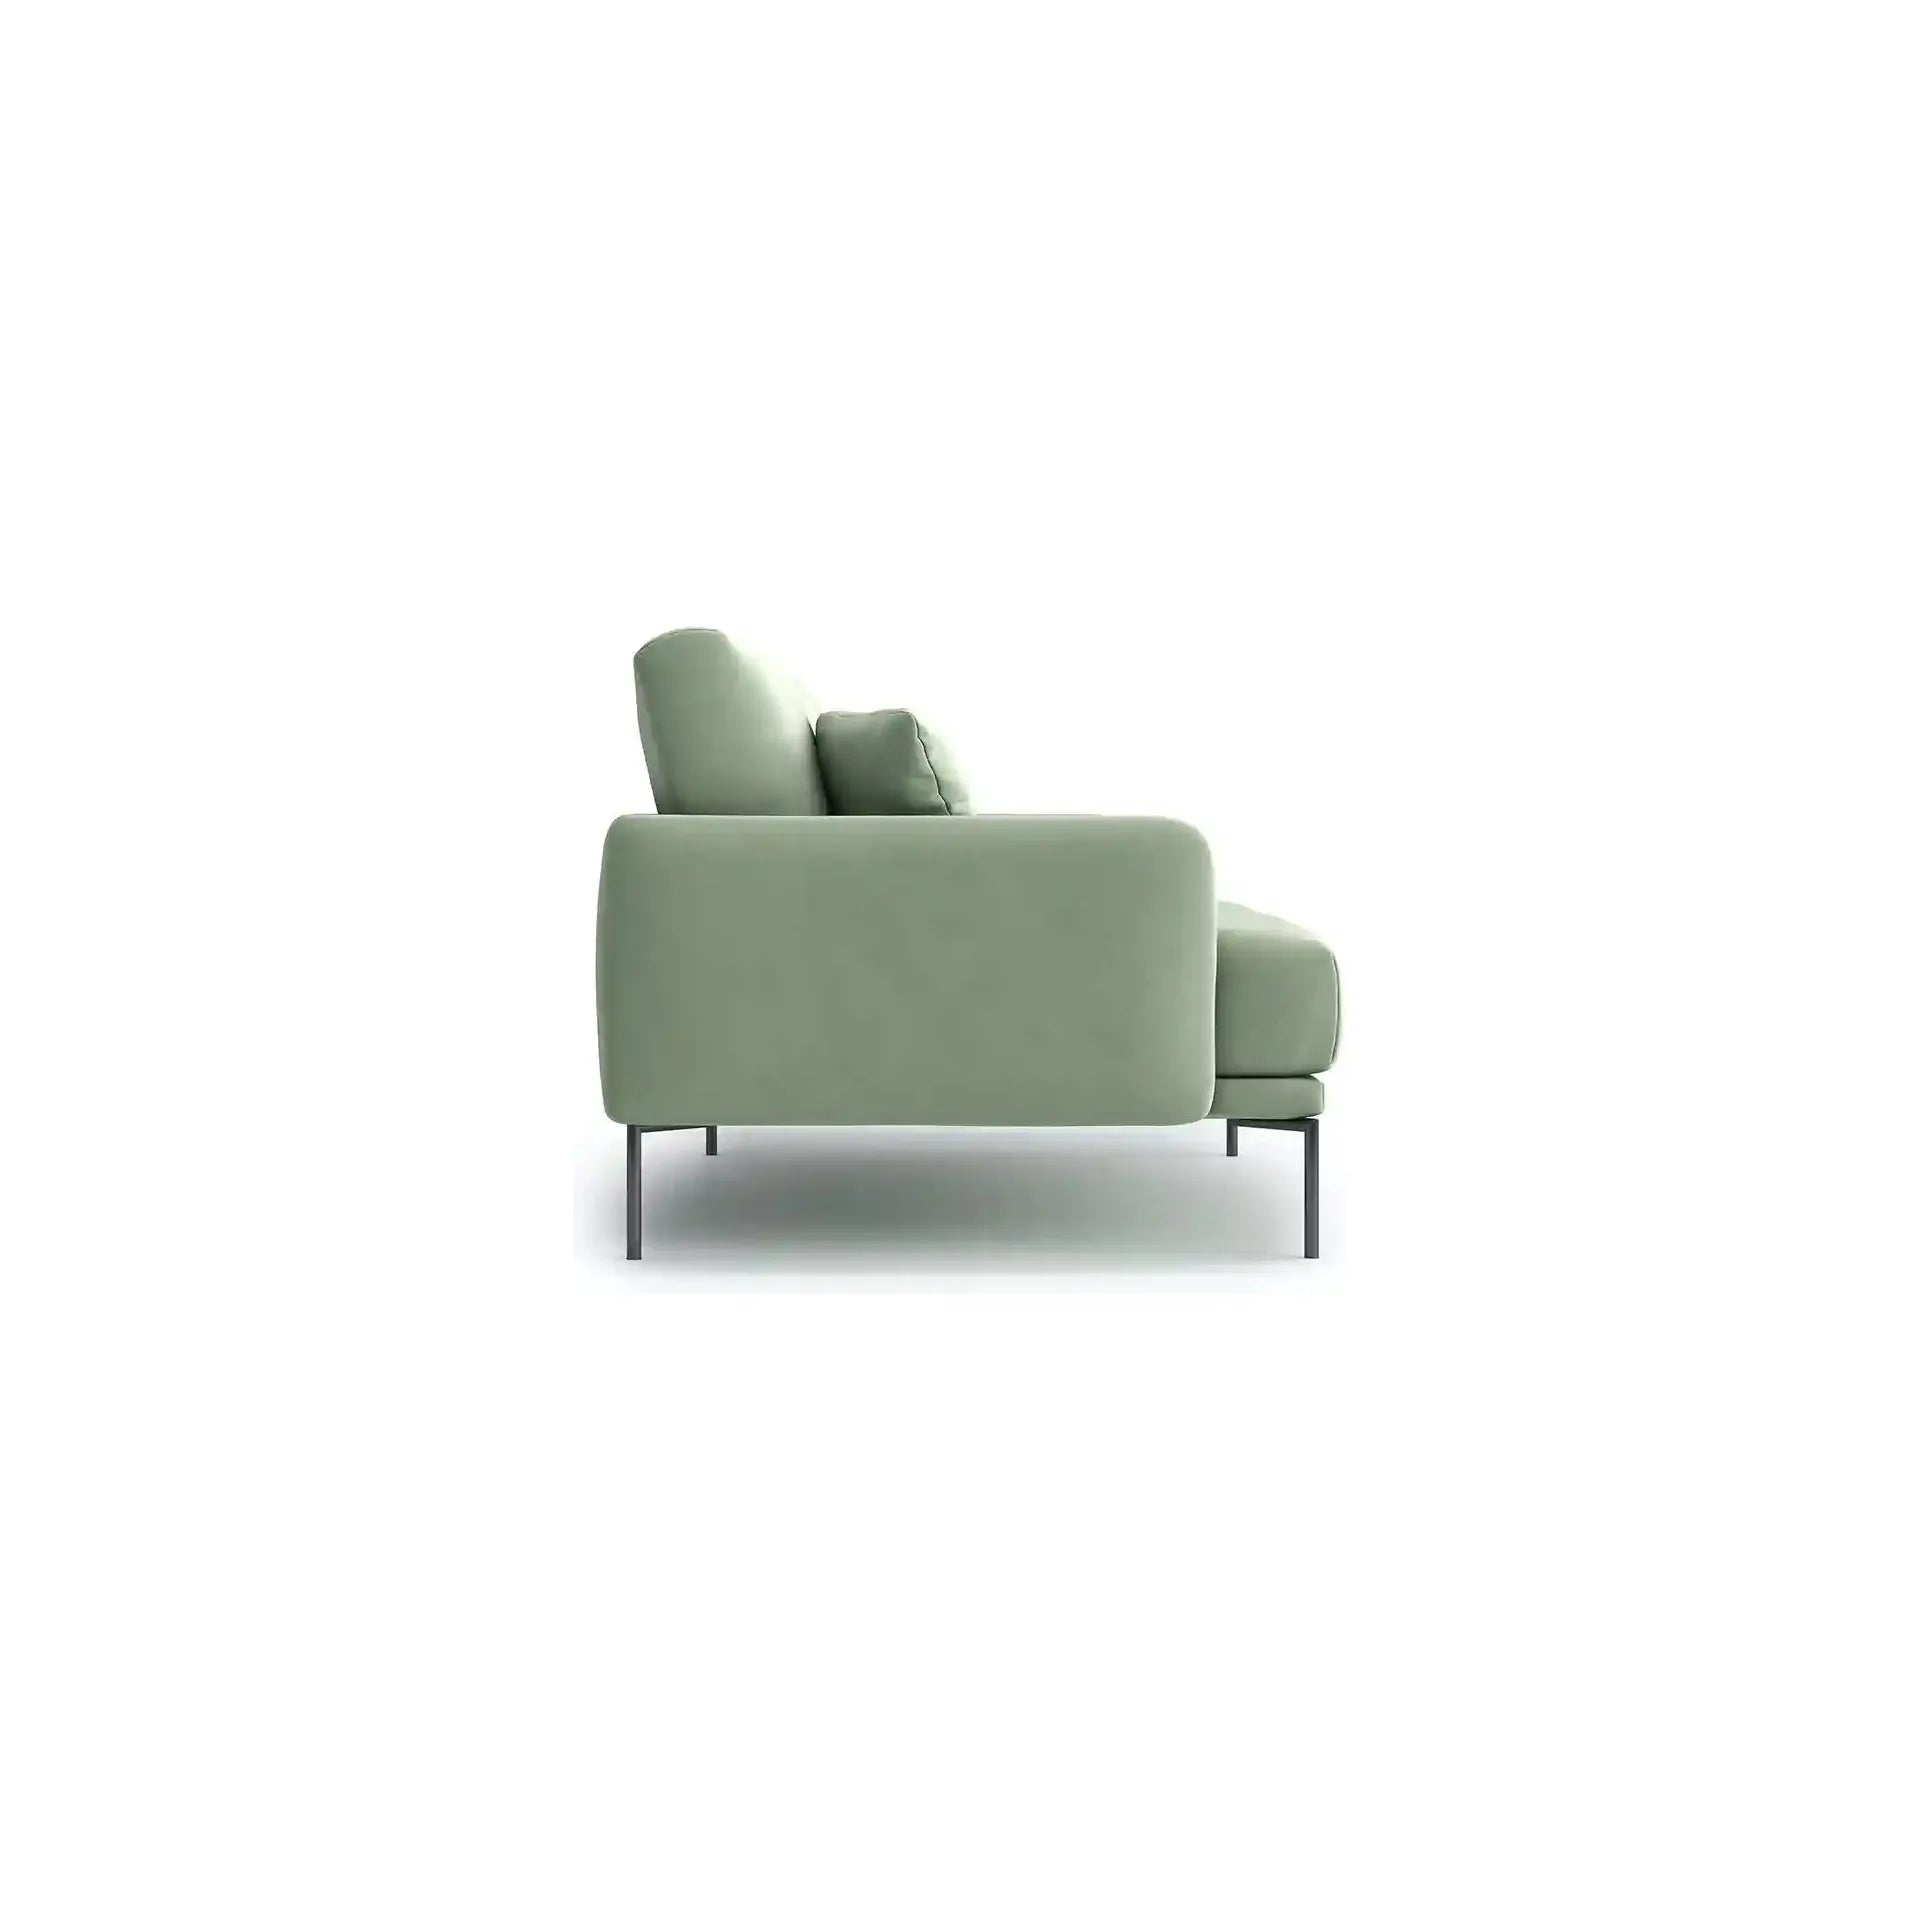 INES 2 vietų sofa, pistacijų žalia spalva